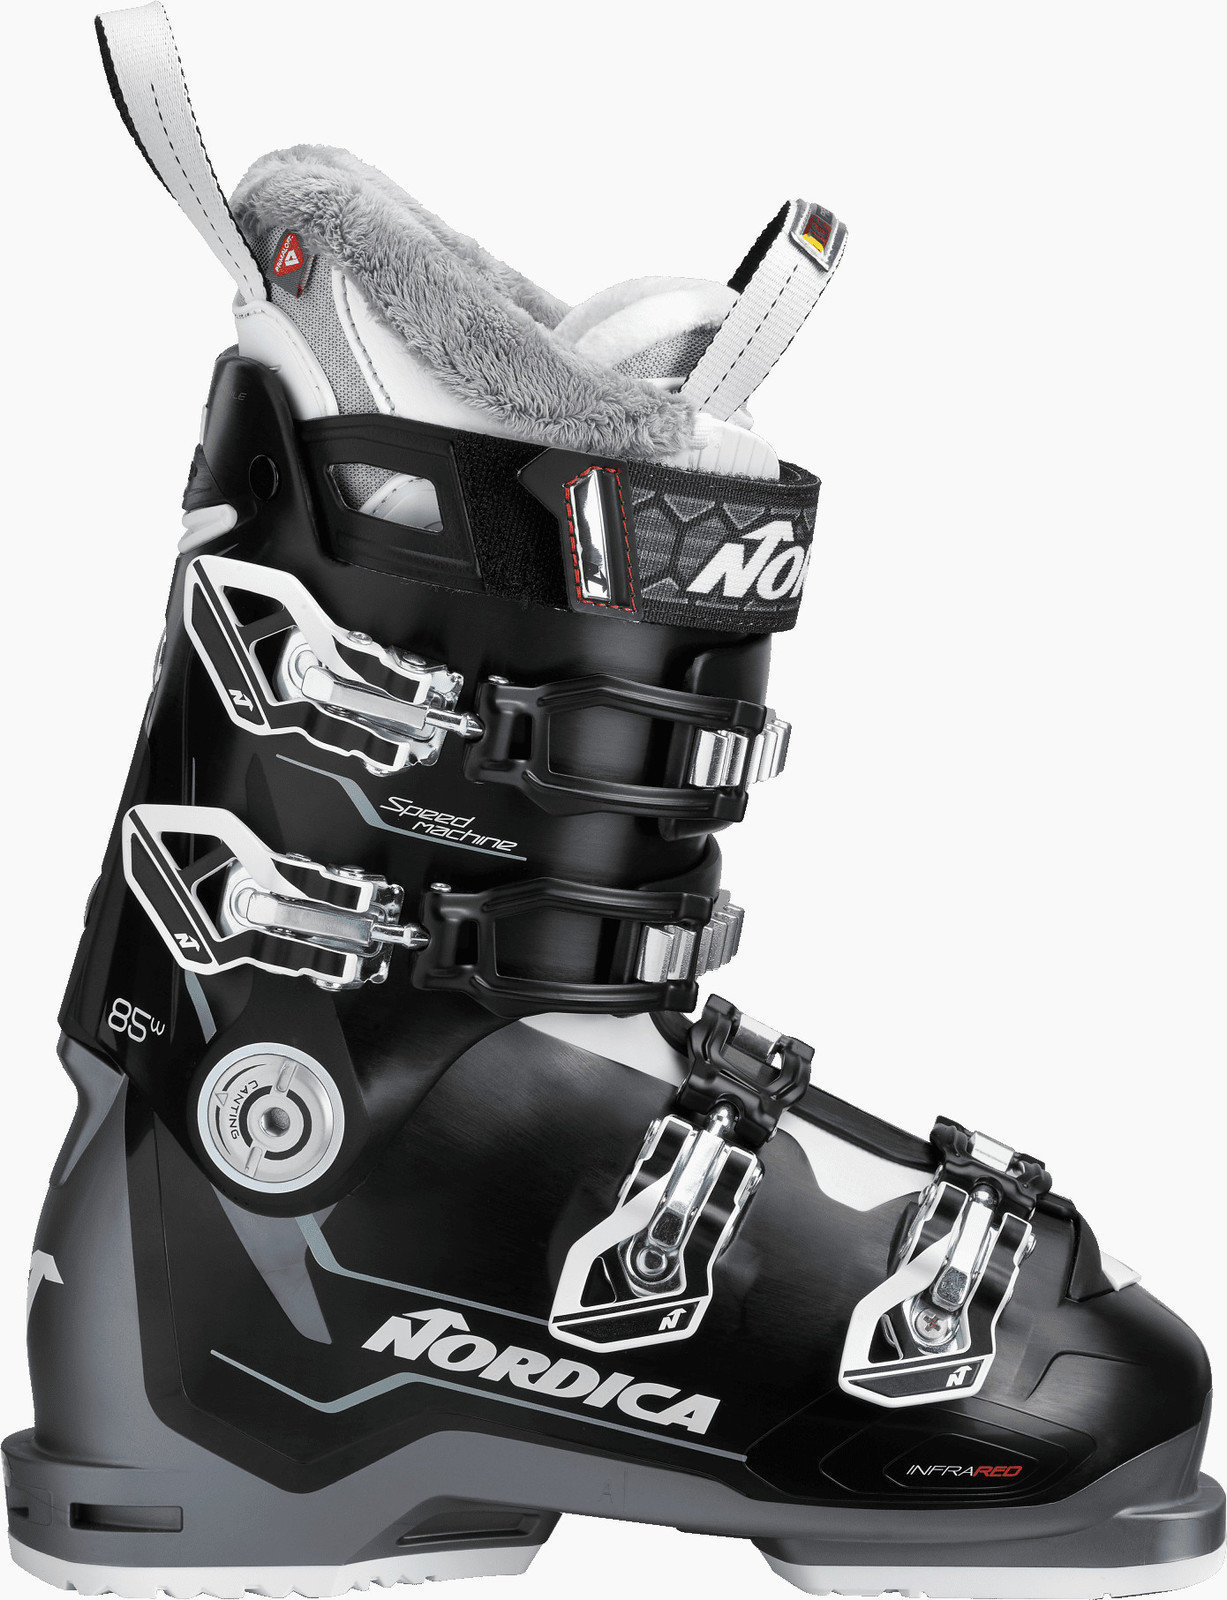 Cipele za alpsko skijanje Nordica Speedmachine W Black-Anthracite-White 255 Cipele za alpsko skijanje